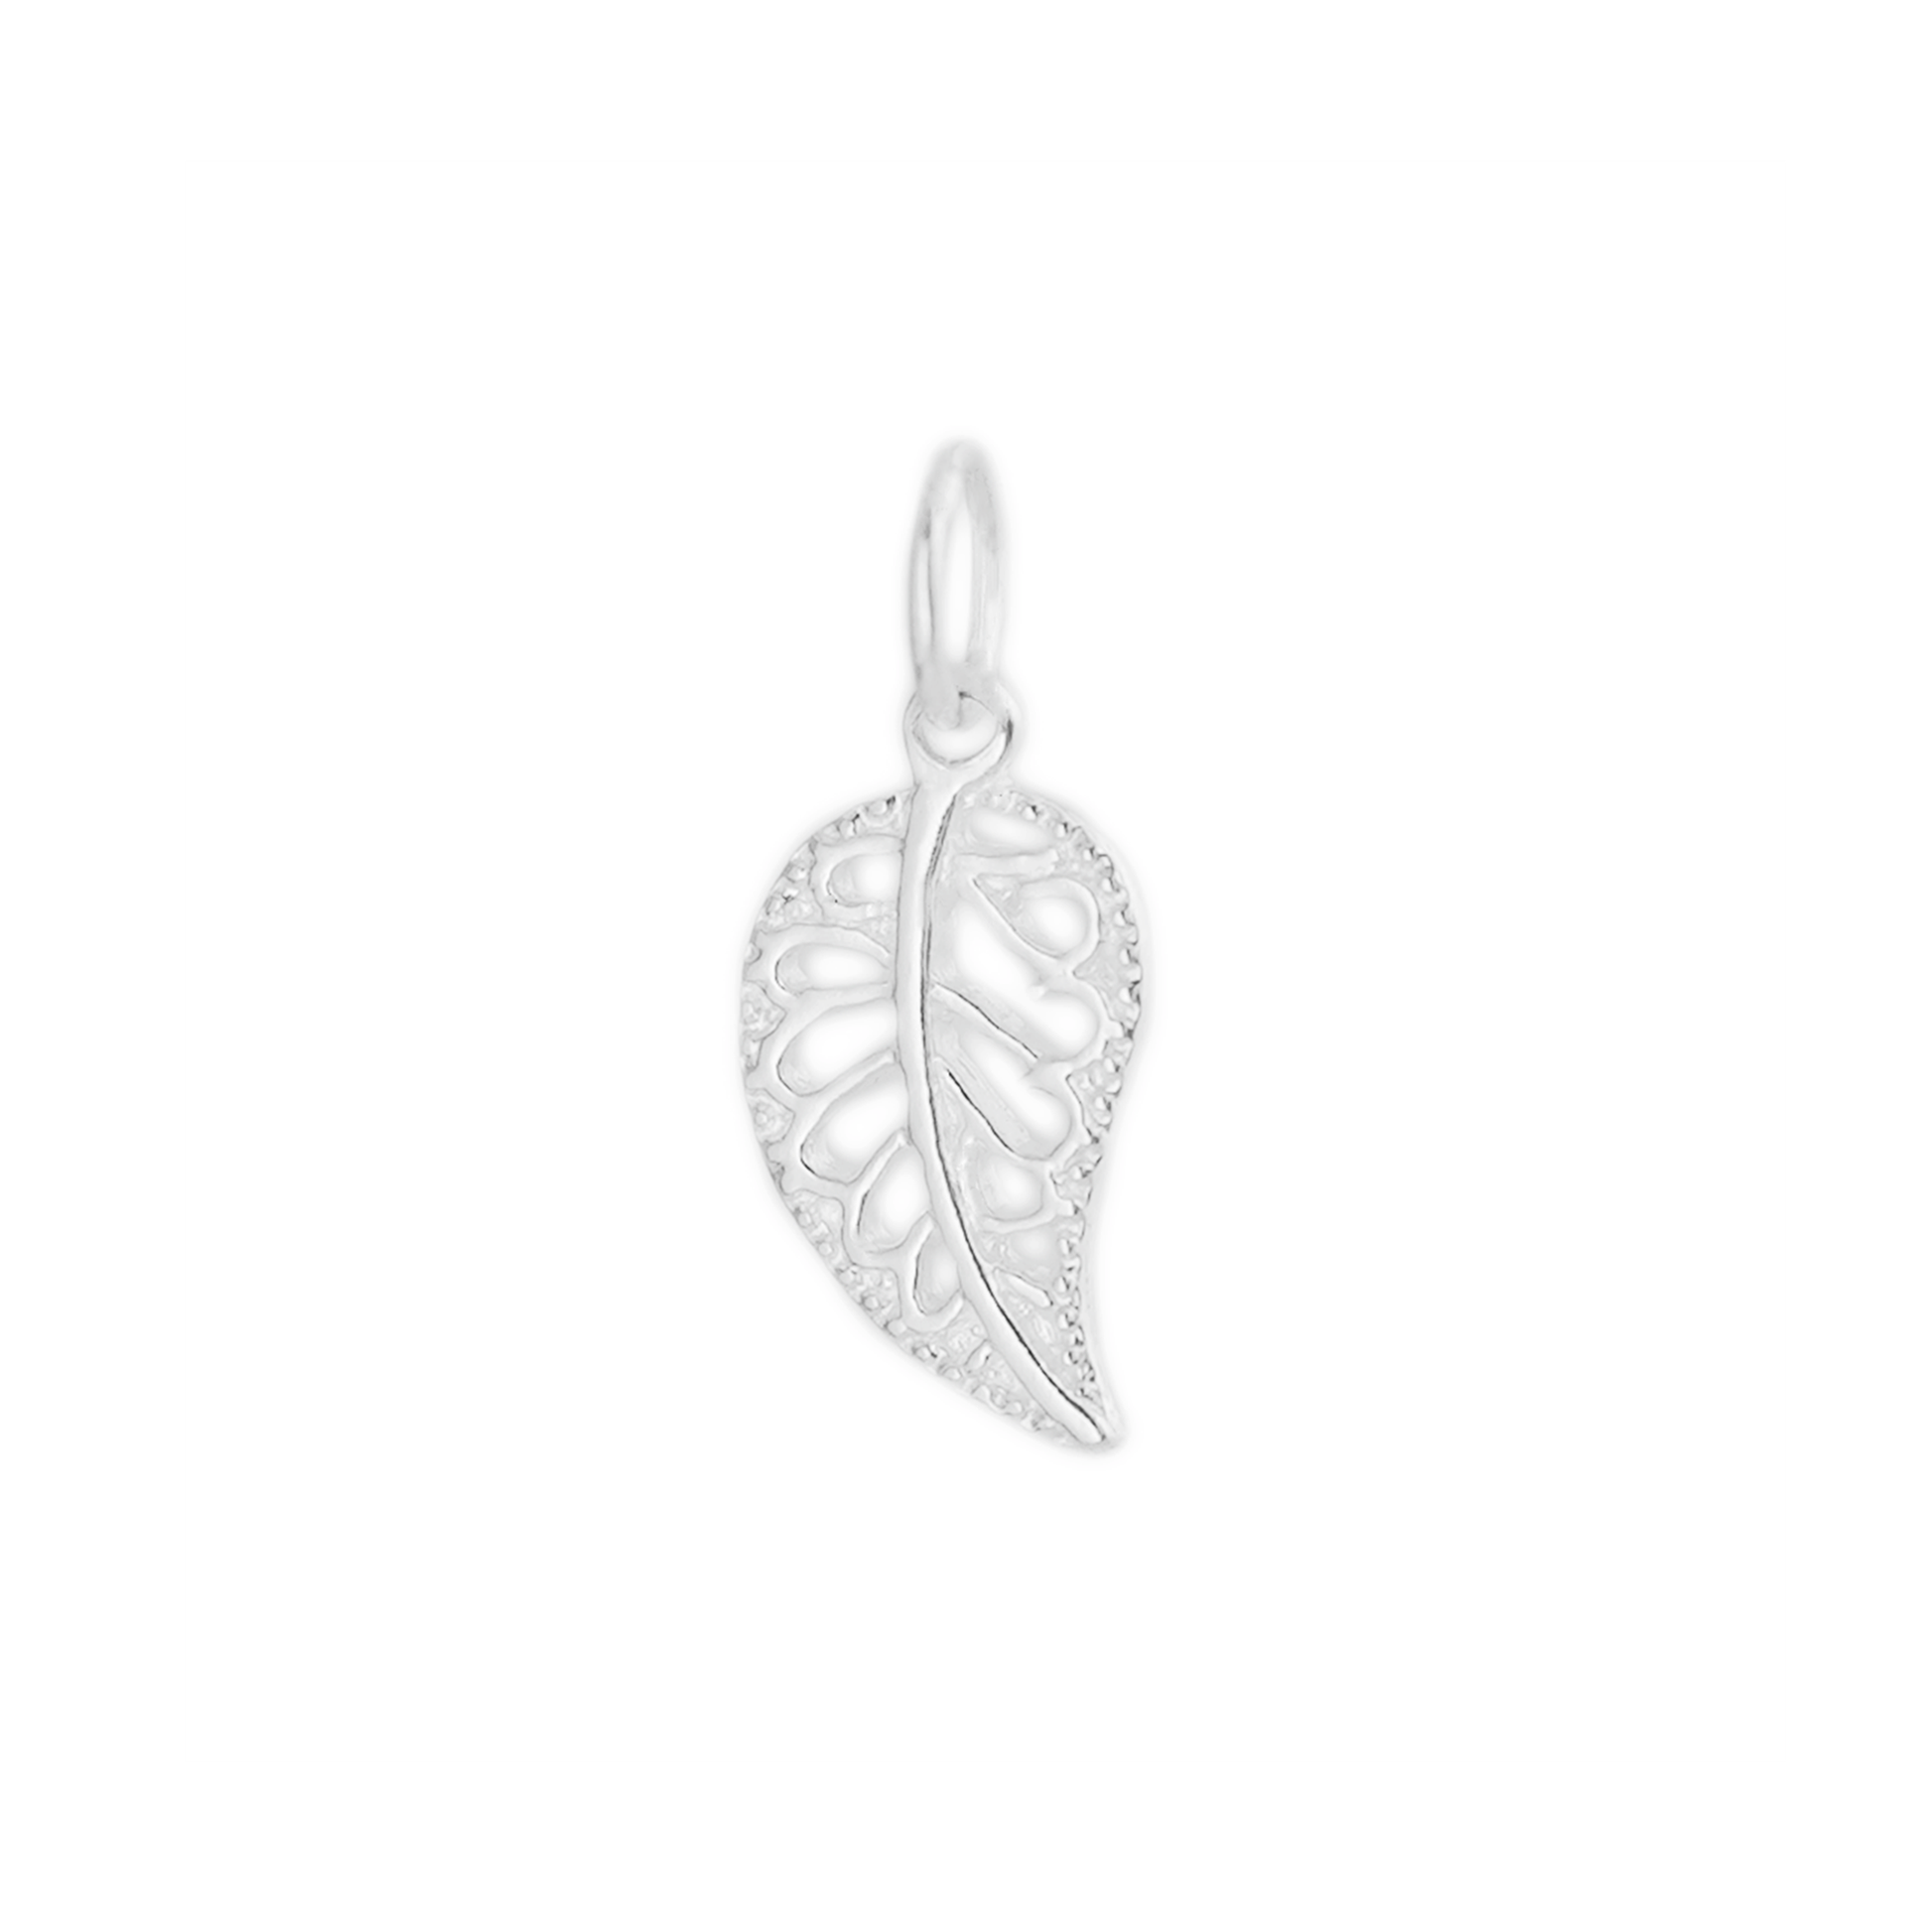 Sterling Silver Filigree Leaf Pendant for Necklace, Bracelet & Earrings - sugarkittenlondon